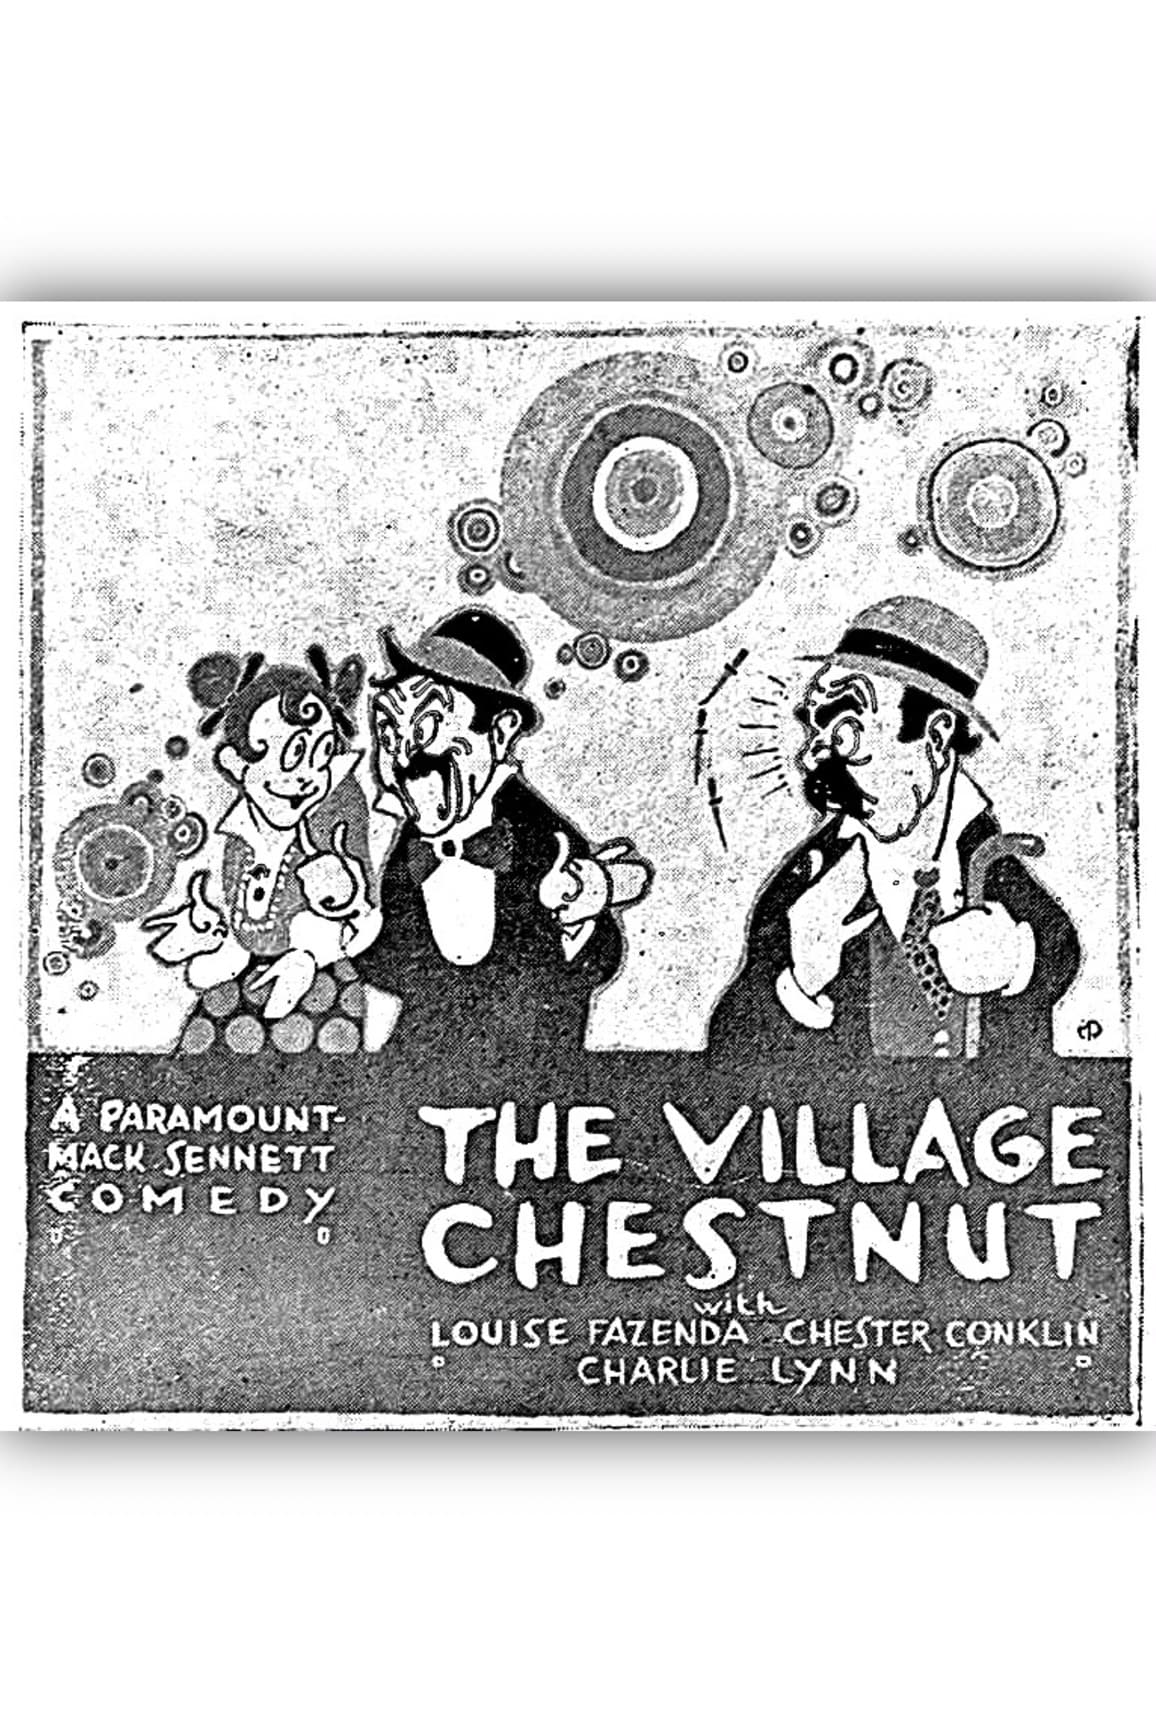 The Village Chestnut